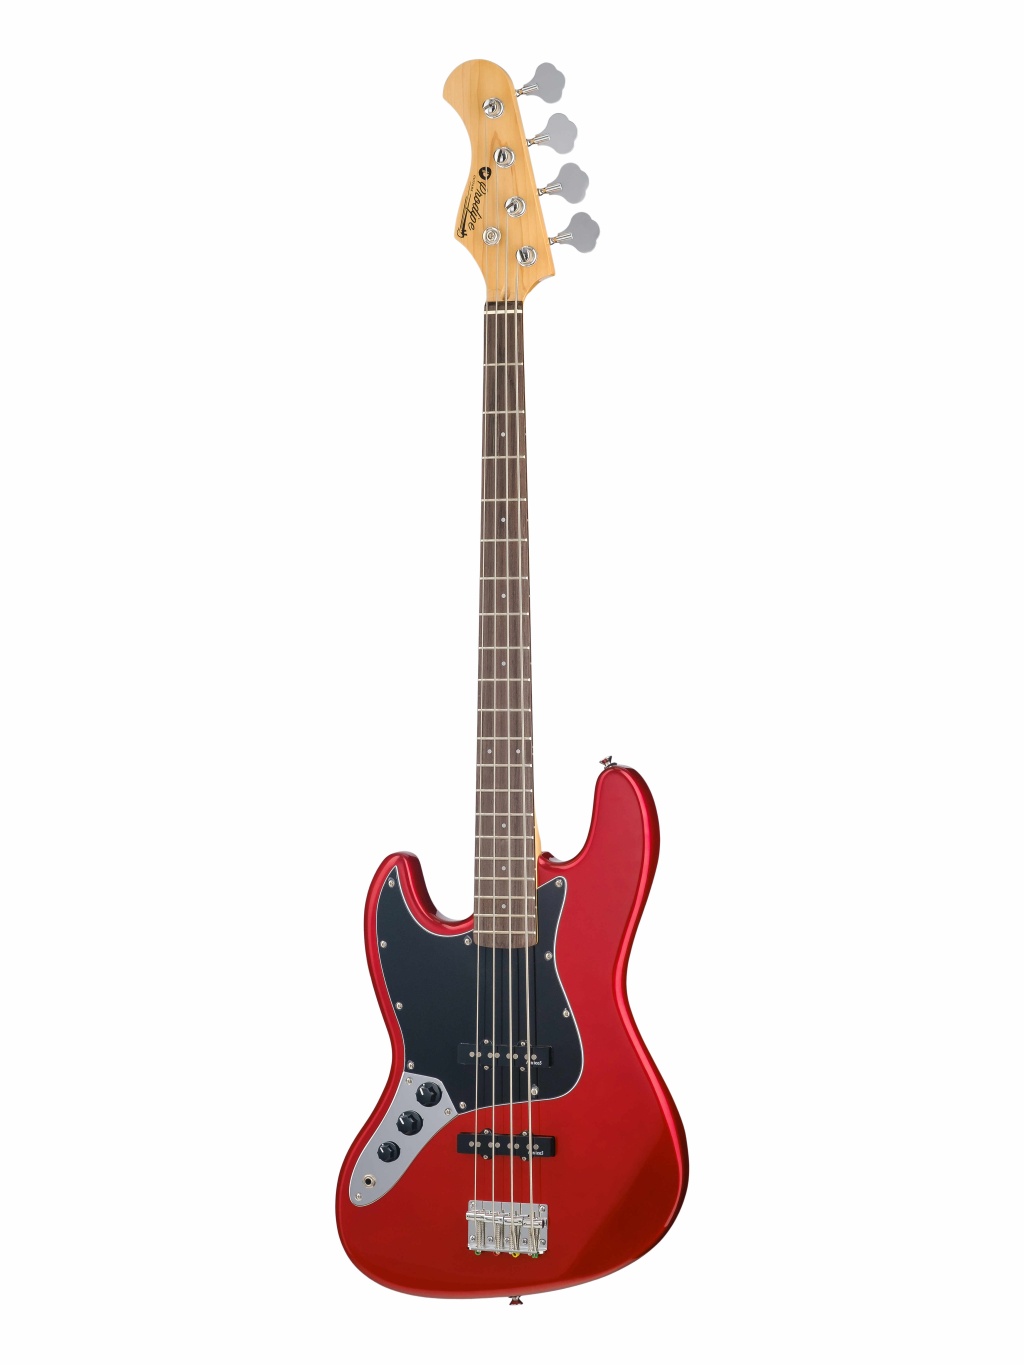 JMFJB80LHRACAR JB80LHRA Бас-гитара леворукая, красная, Prodipe